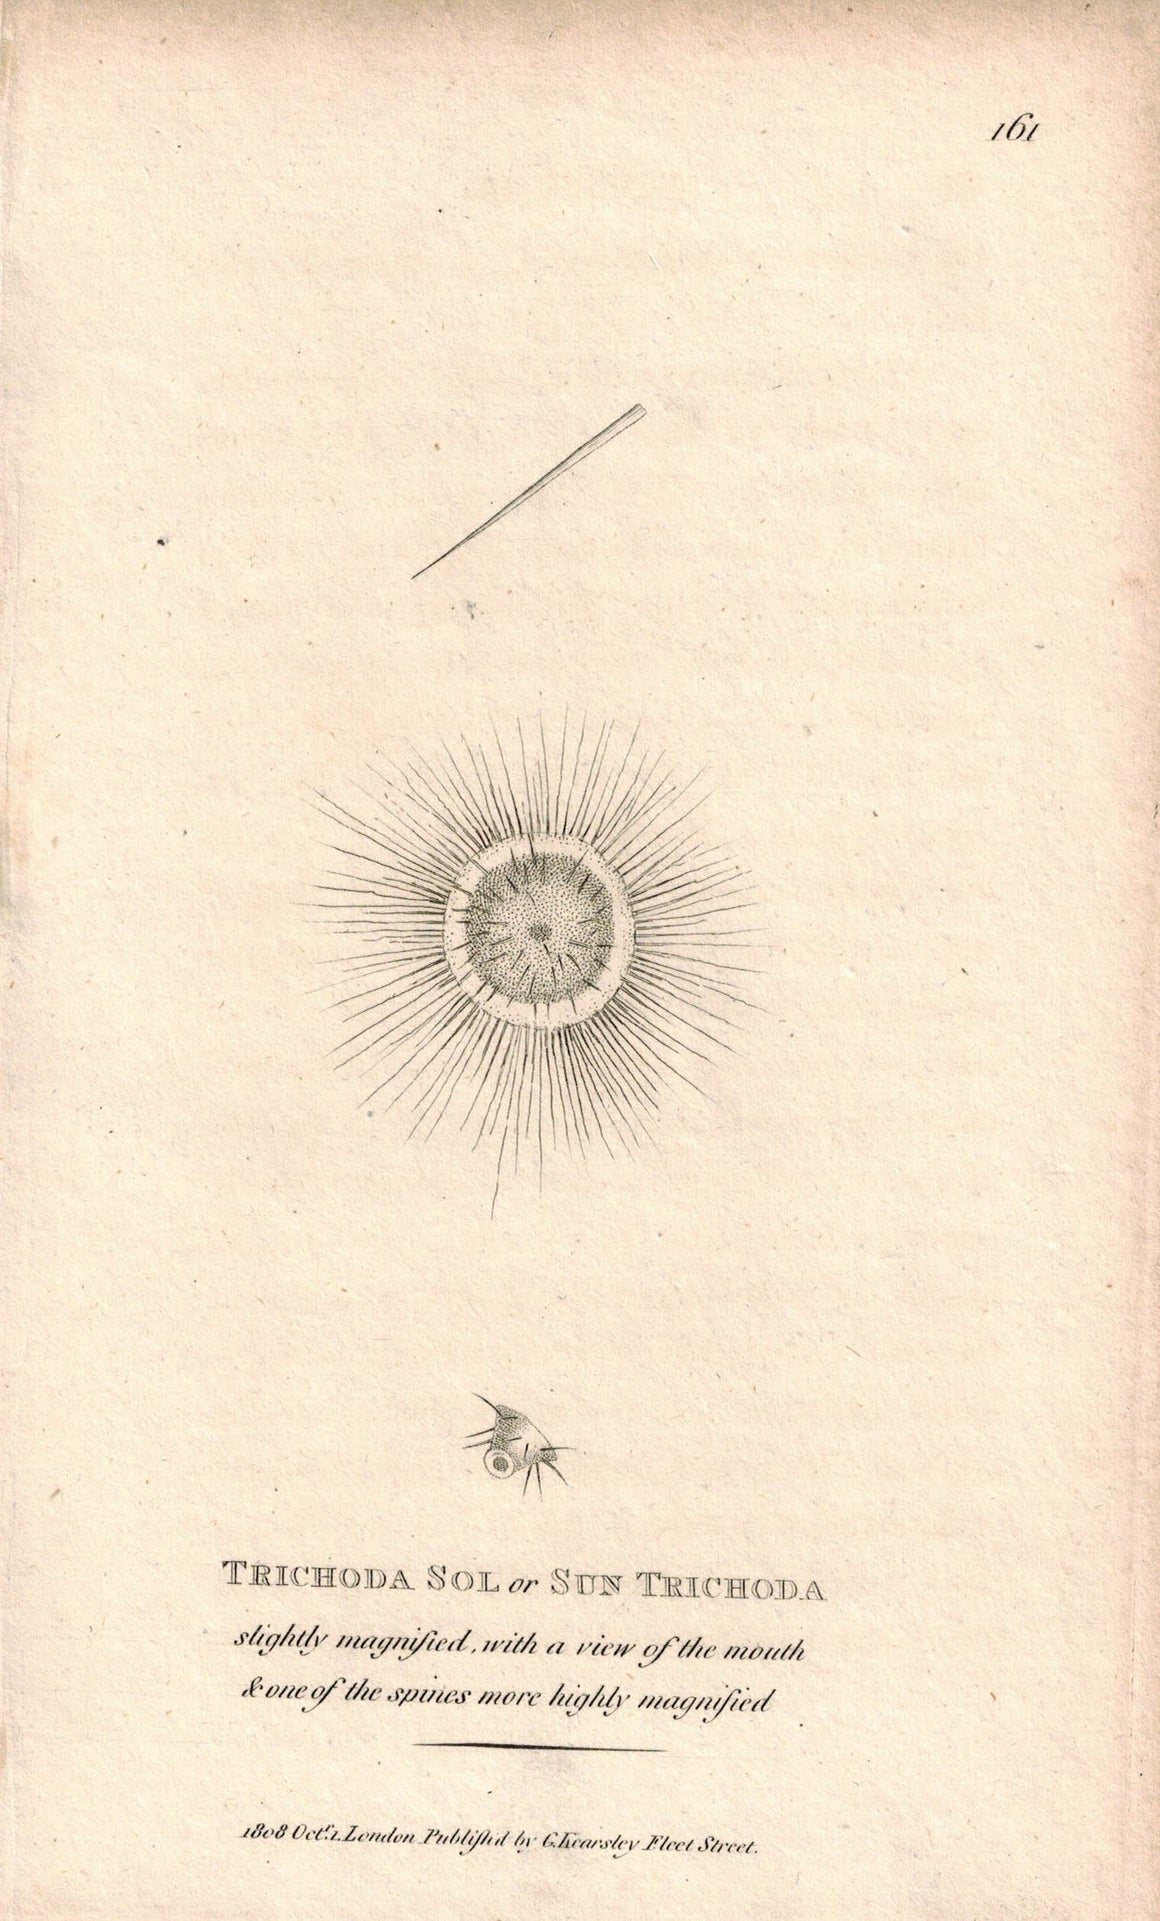 Trichoda Sol or Sun Trichoda 1809 Original Engraving Print by Shaw & Griffith